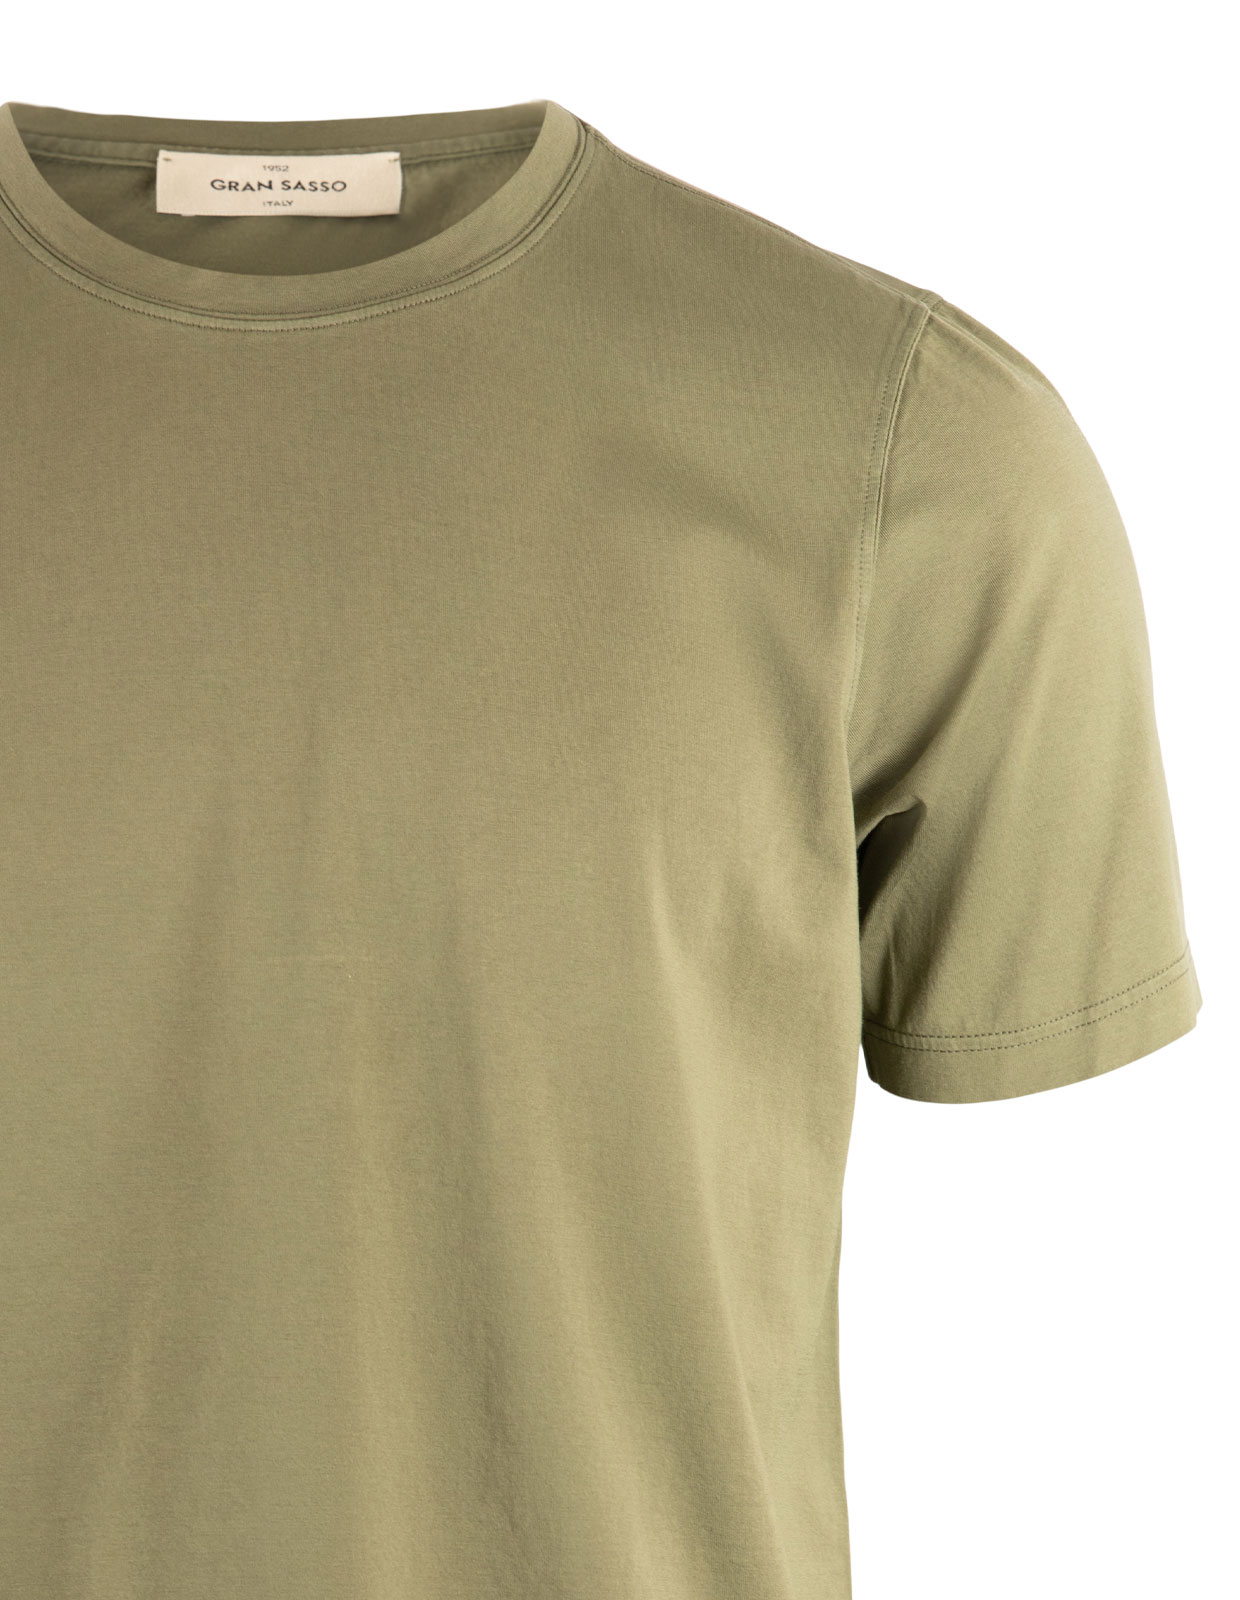 T-Shirt Bomull Olivgrön Stl 54